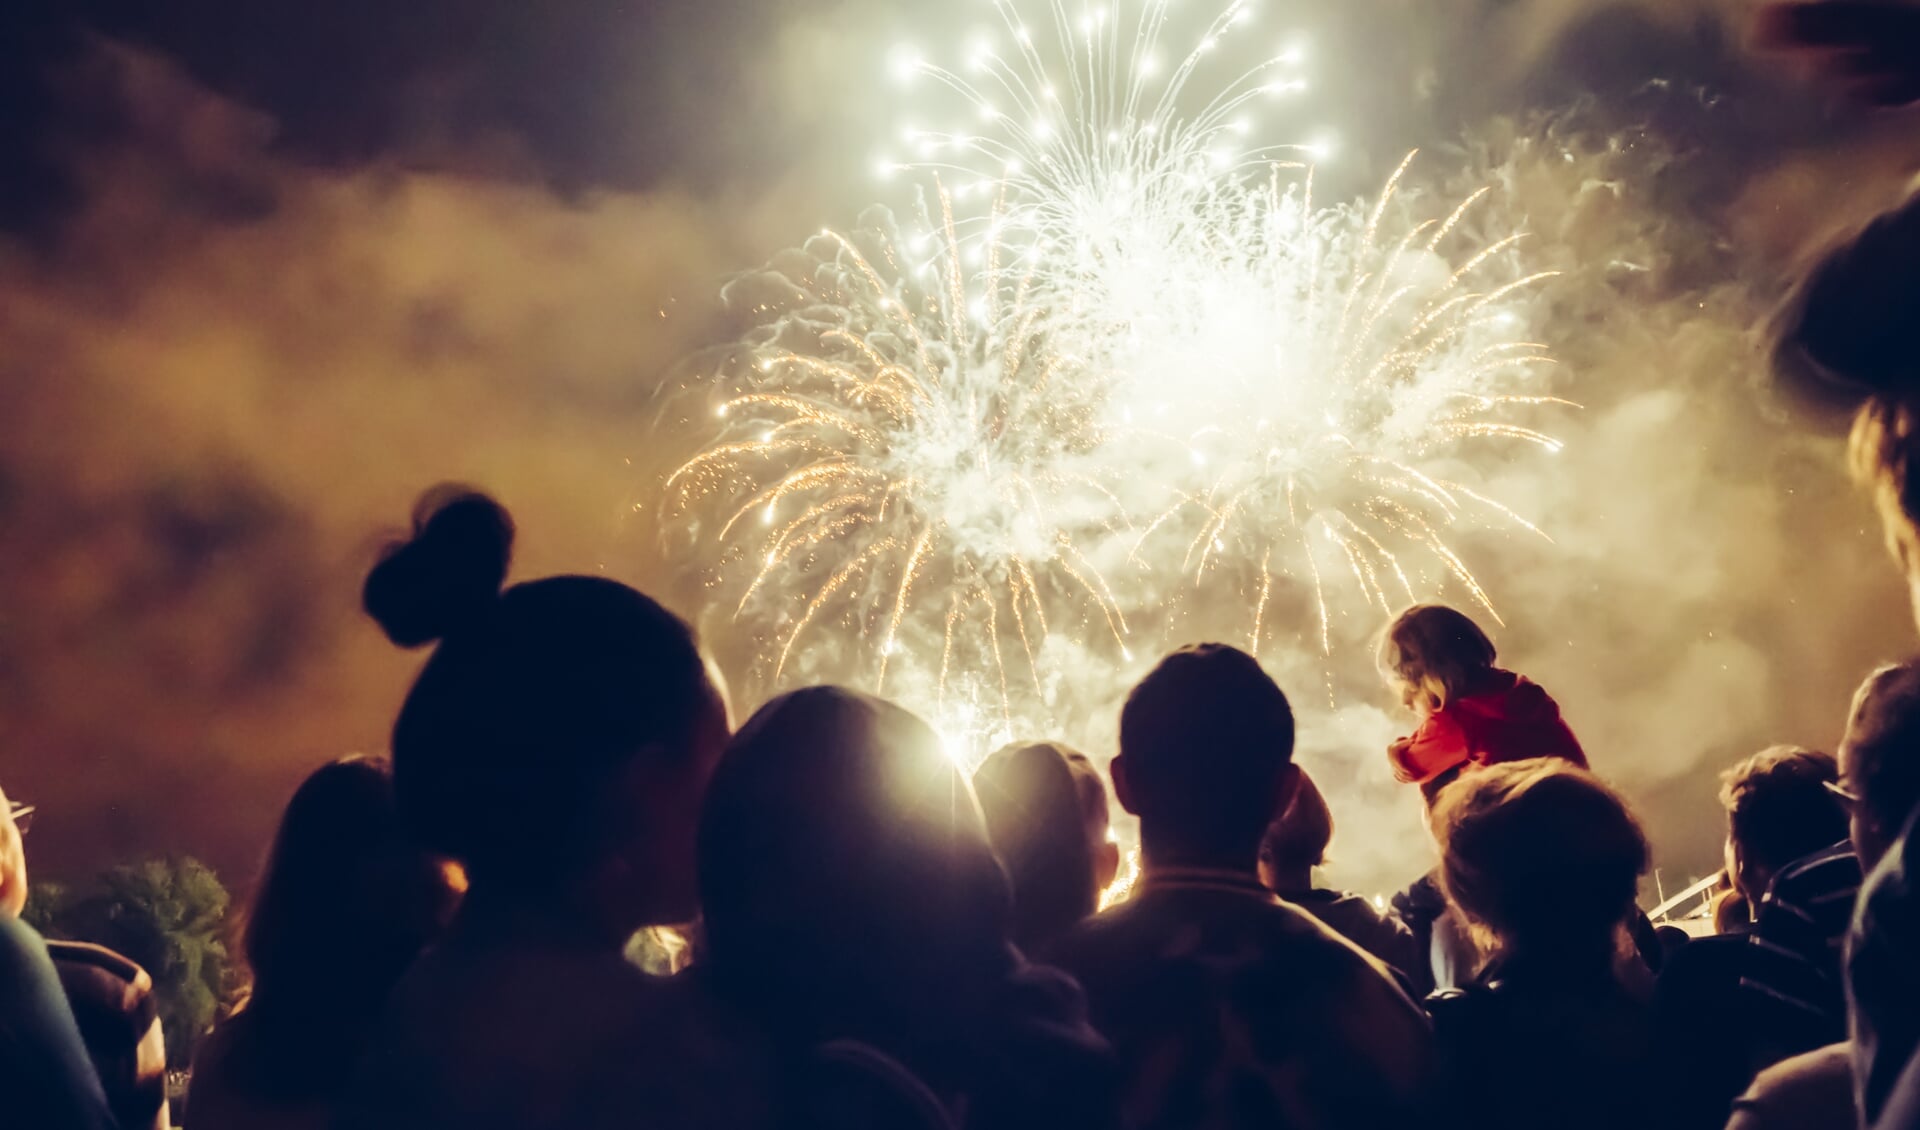 60 procent van de Nederlanders is voorstander van een algeheel vuurwerkverbod, als een centrale vuurwerkshow wordt georganiseerd. (Archiefoto: Shutterstock)